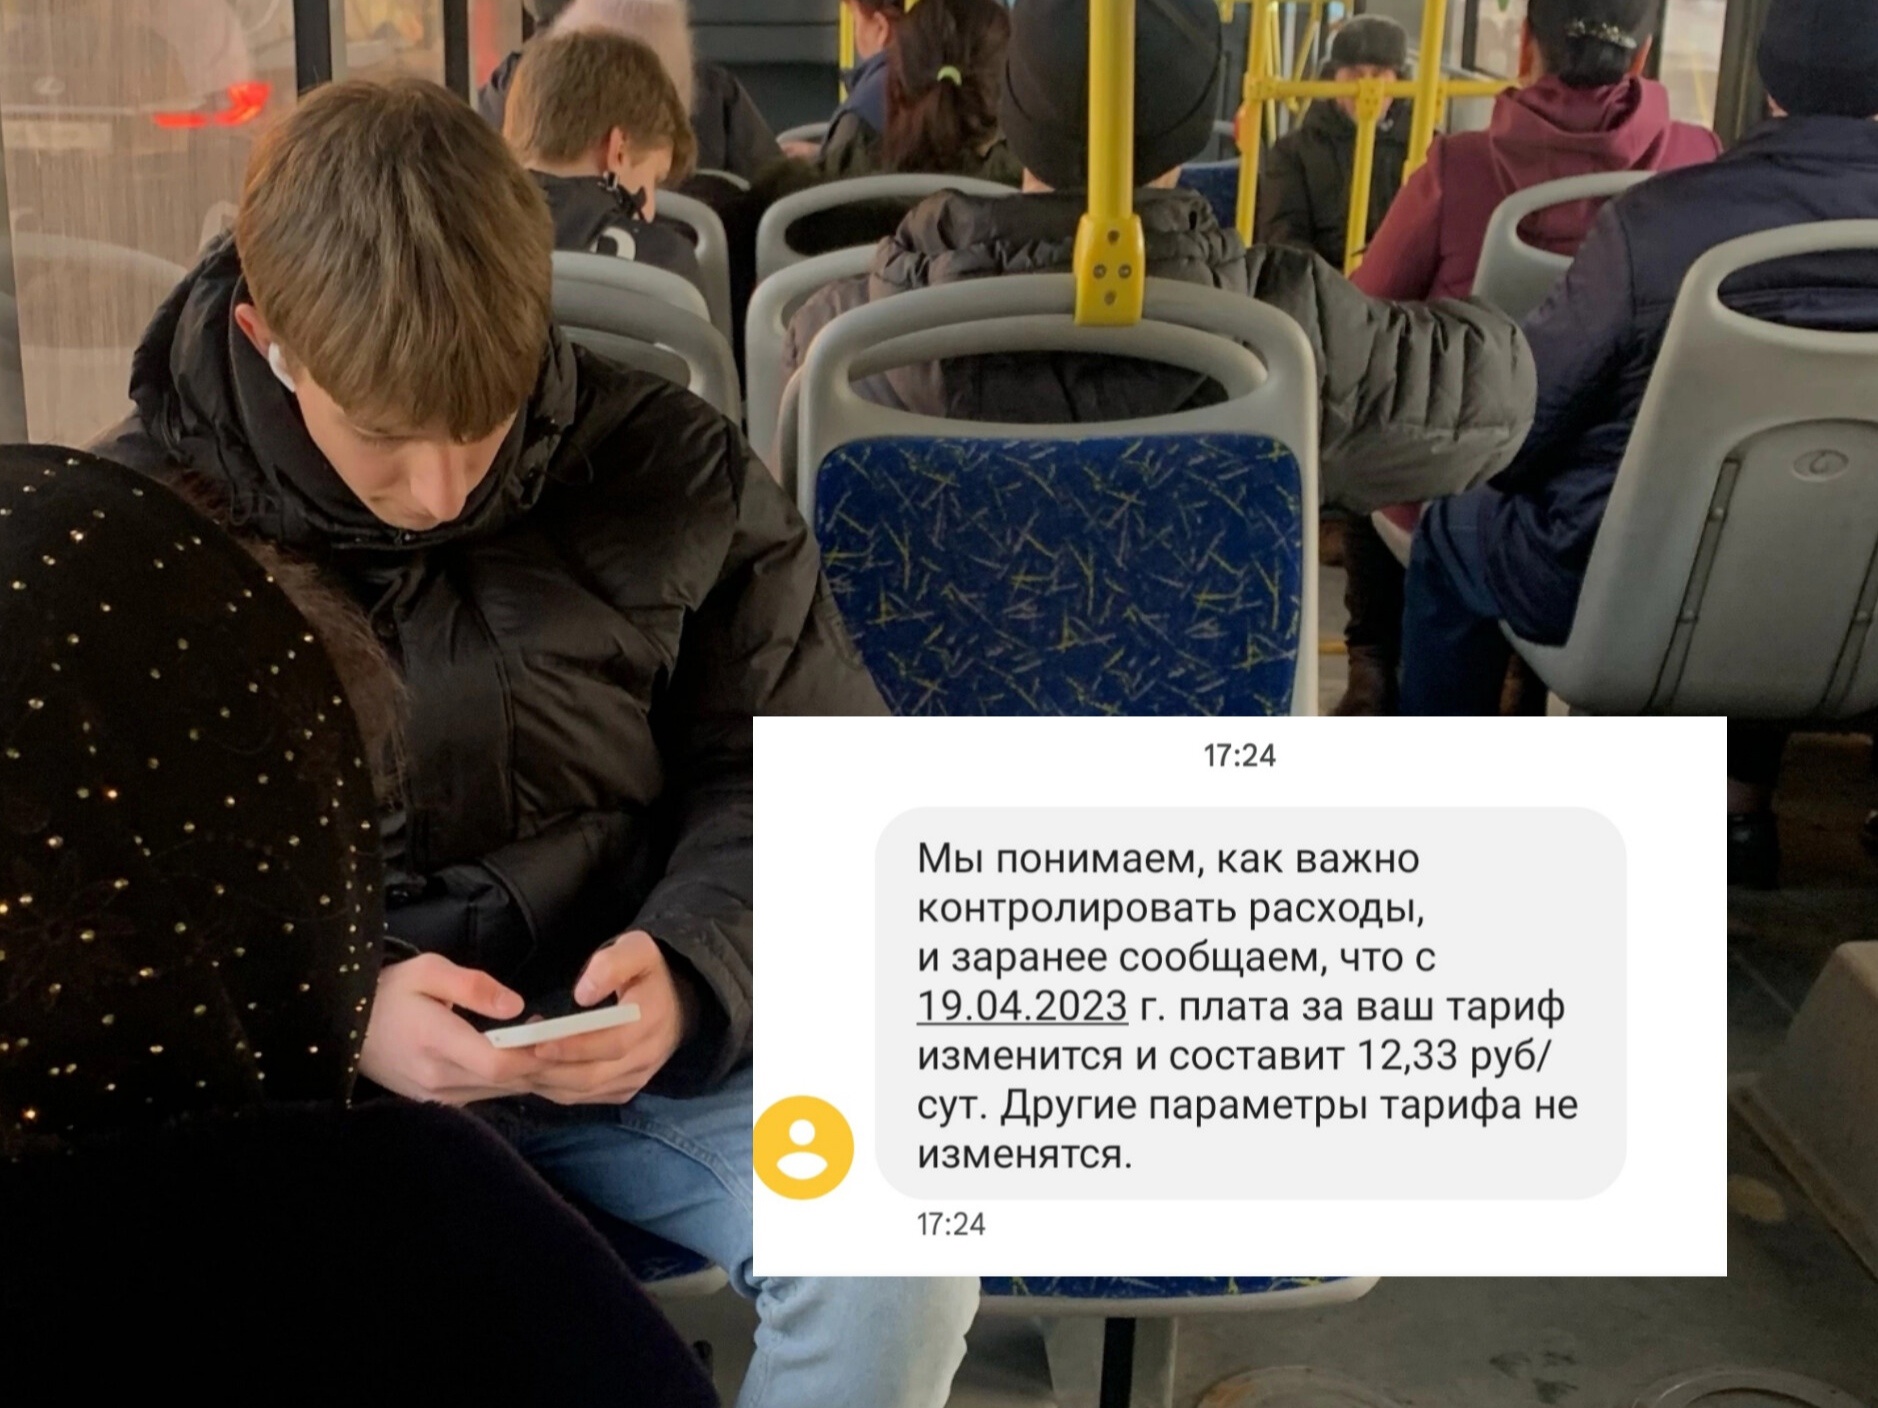 "Стоимость оборудования растет": в Ярославле сотовые операторы повышают тарифы